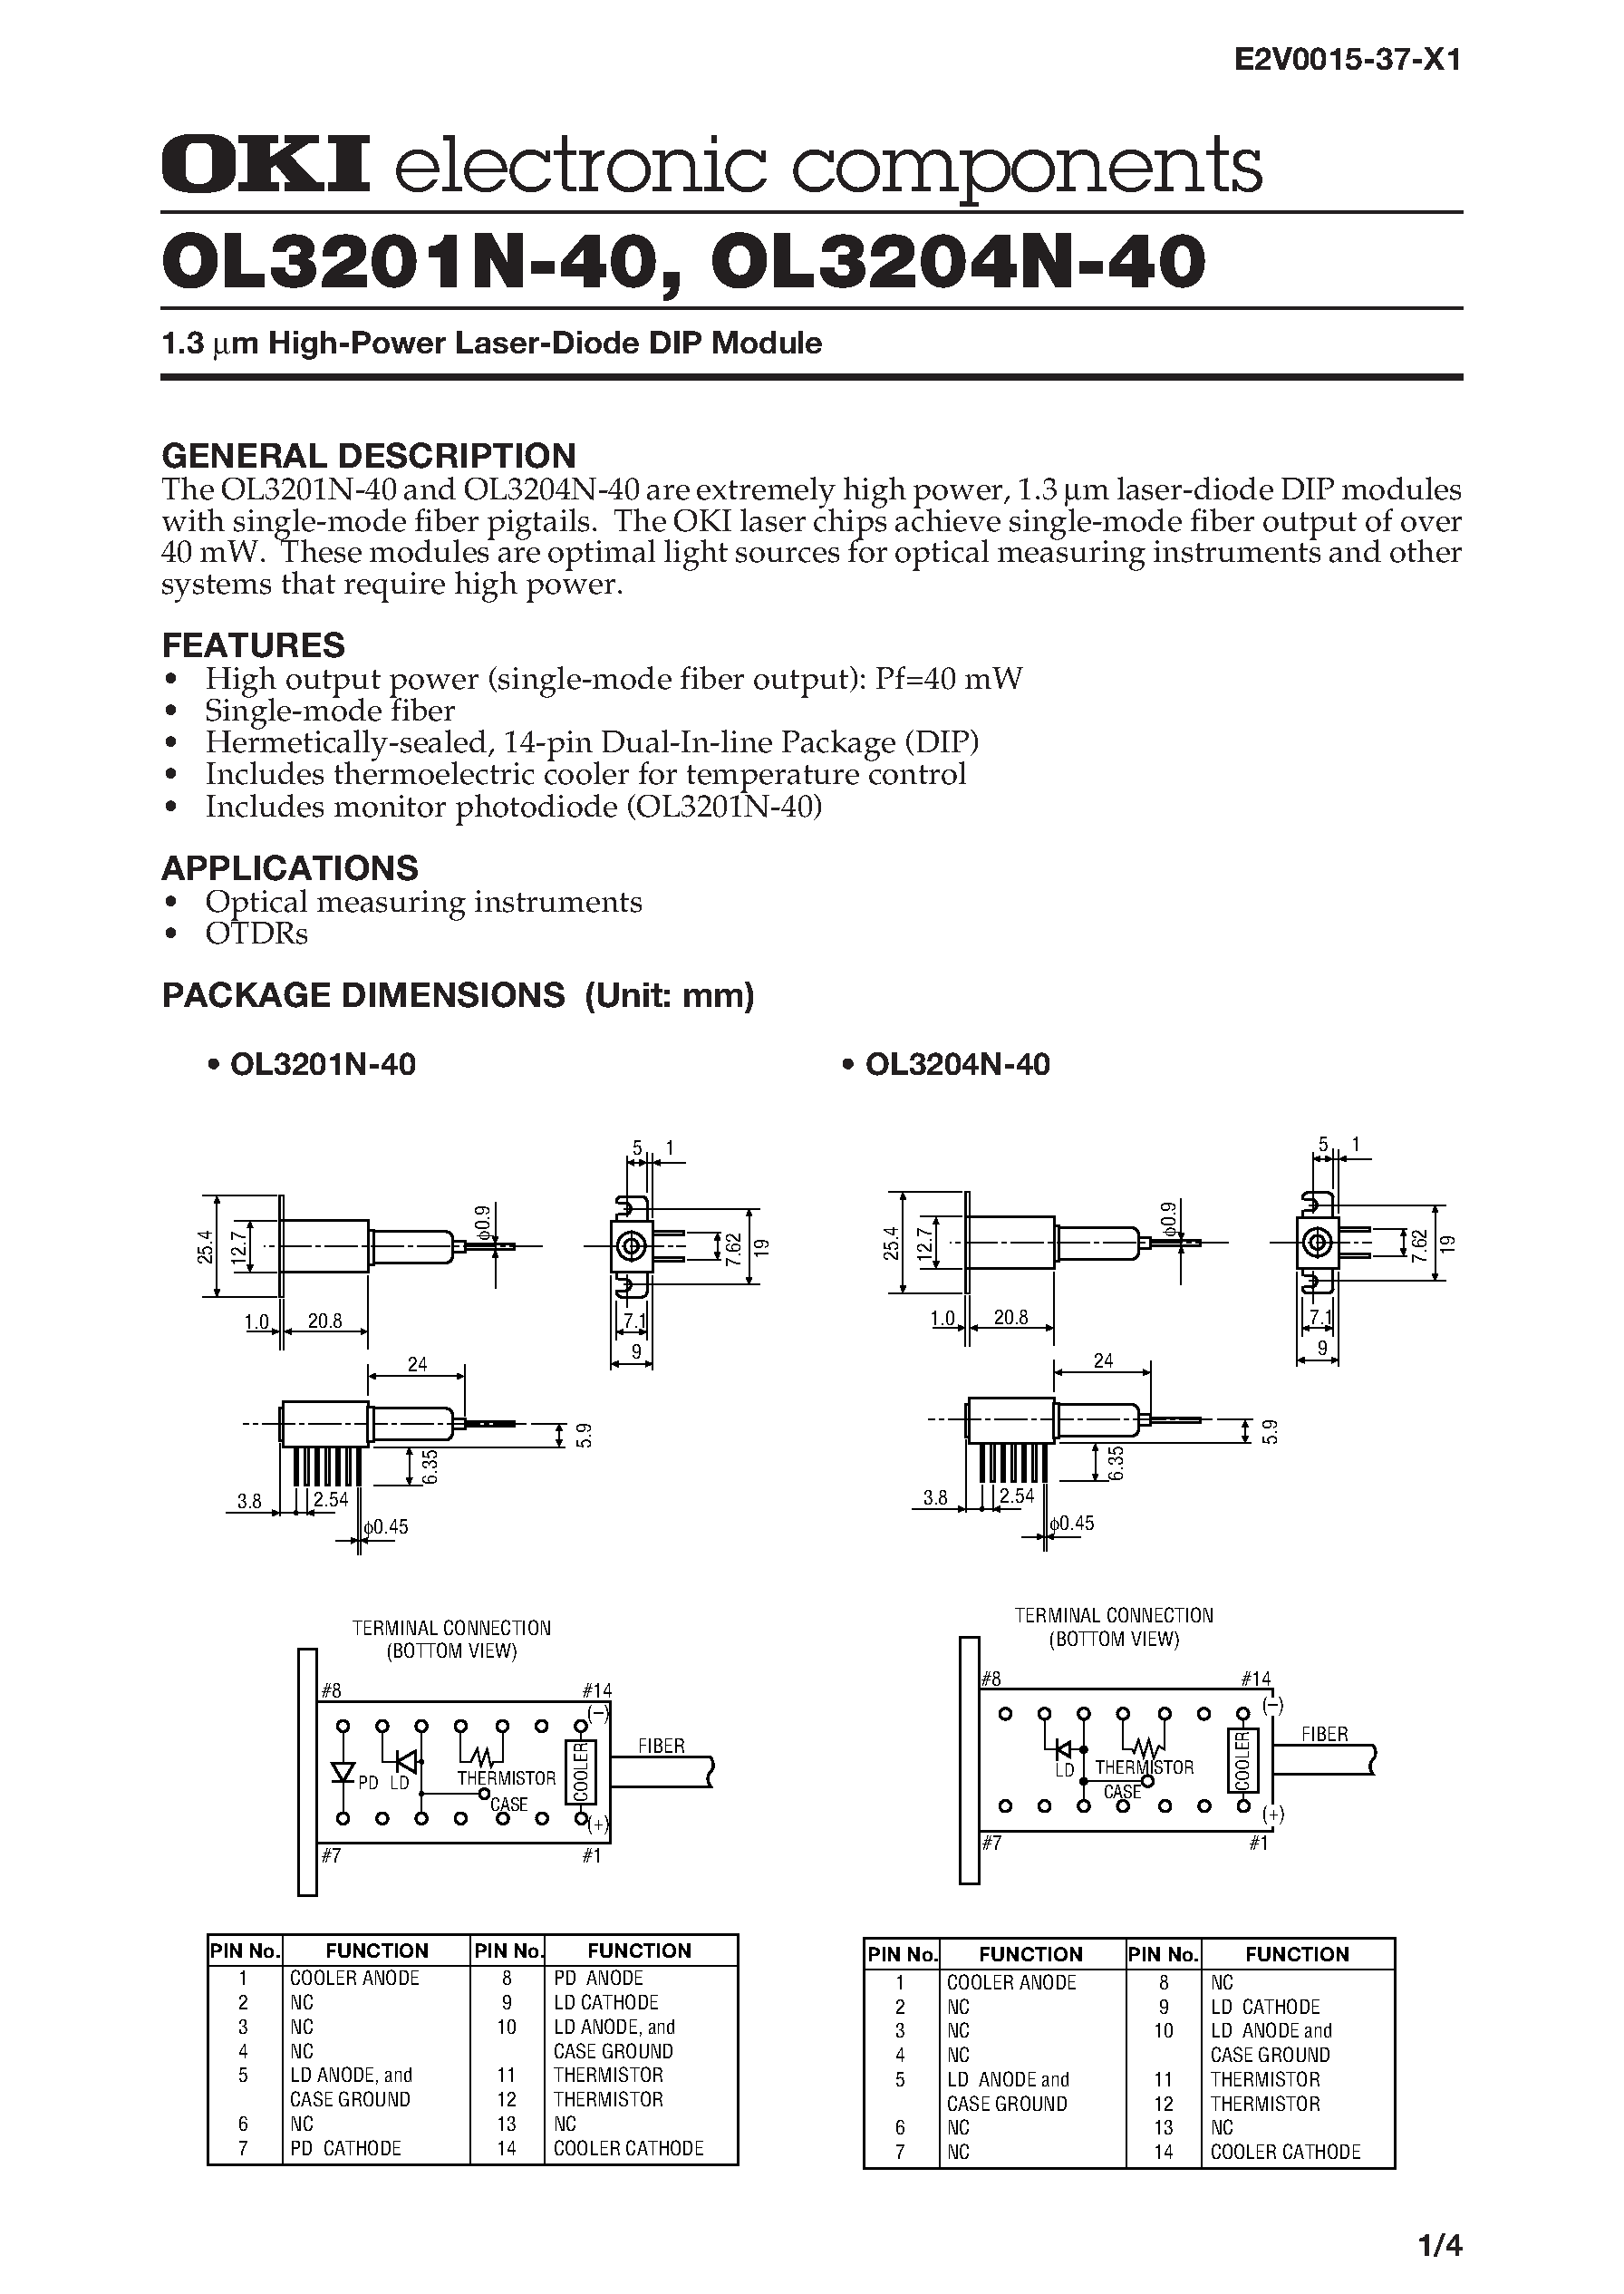 Datasheet OL3204N-40 - 1.3 m High-Power Laser-Diode DIP Module page 1